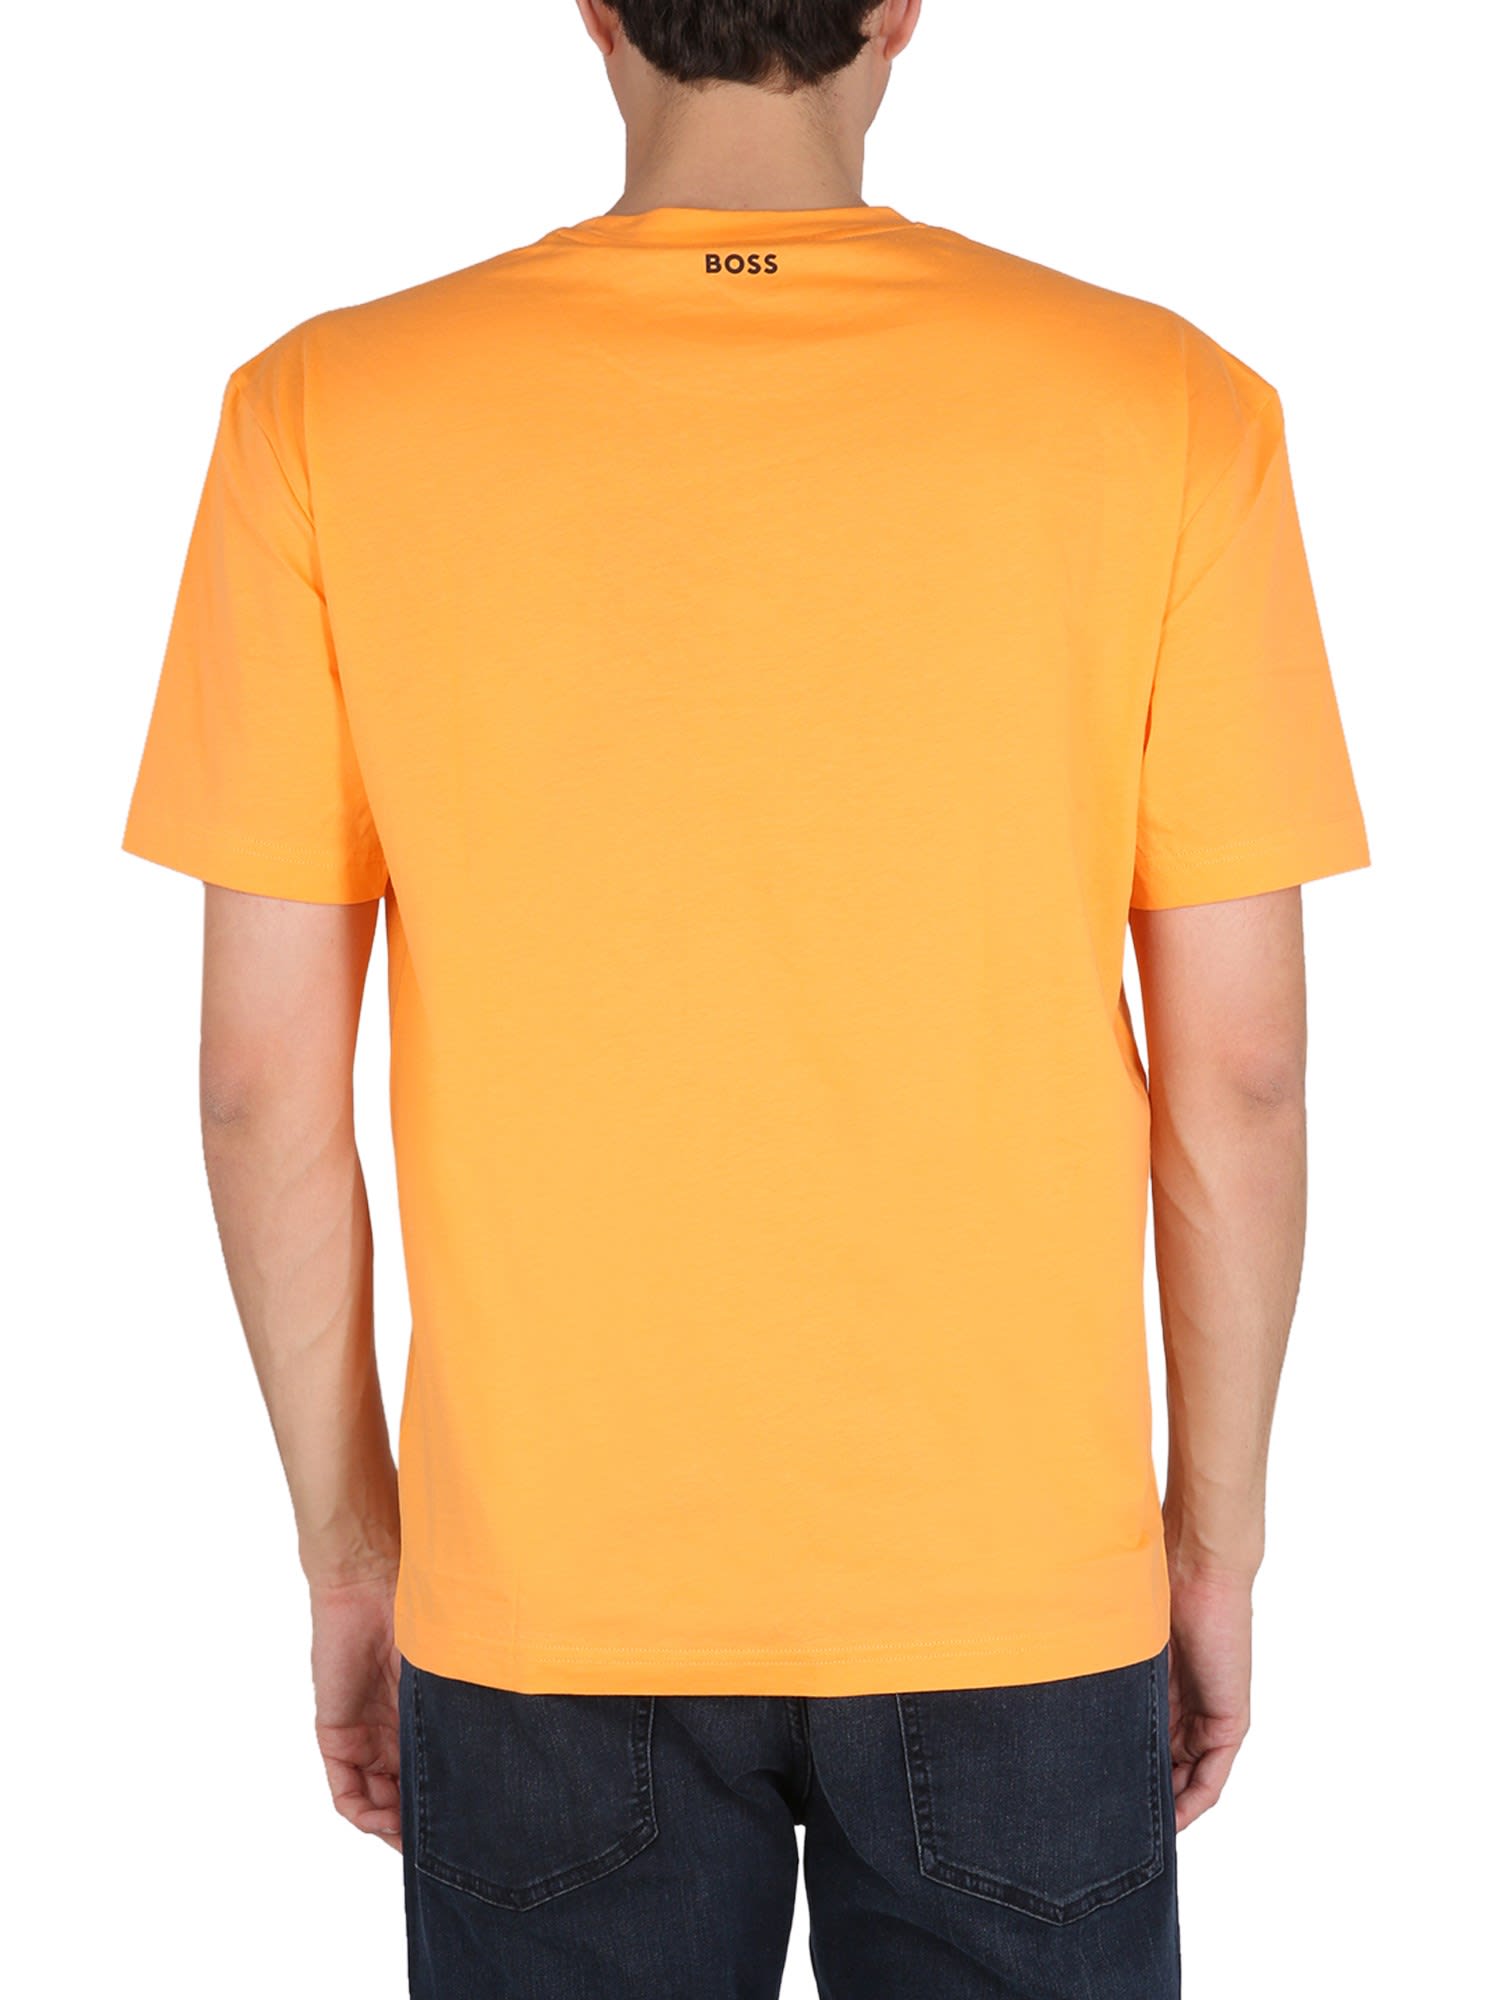 Hugo Boss Logo Print Orange In T-shirt ModeSens 